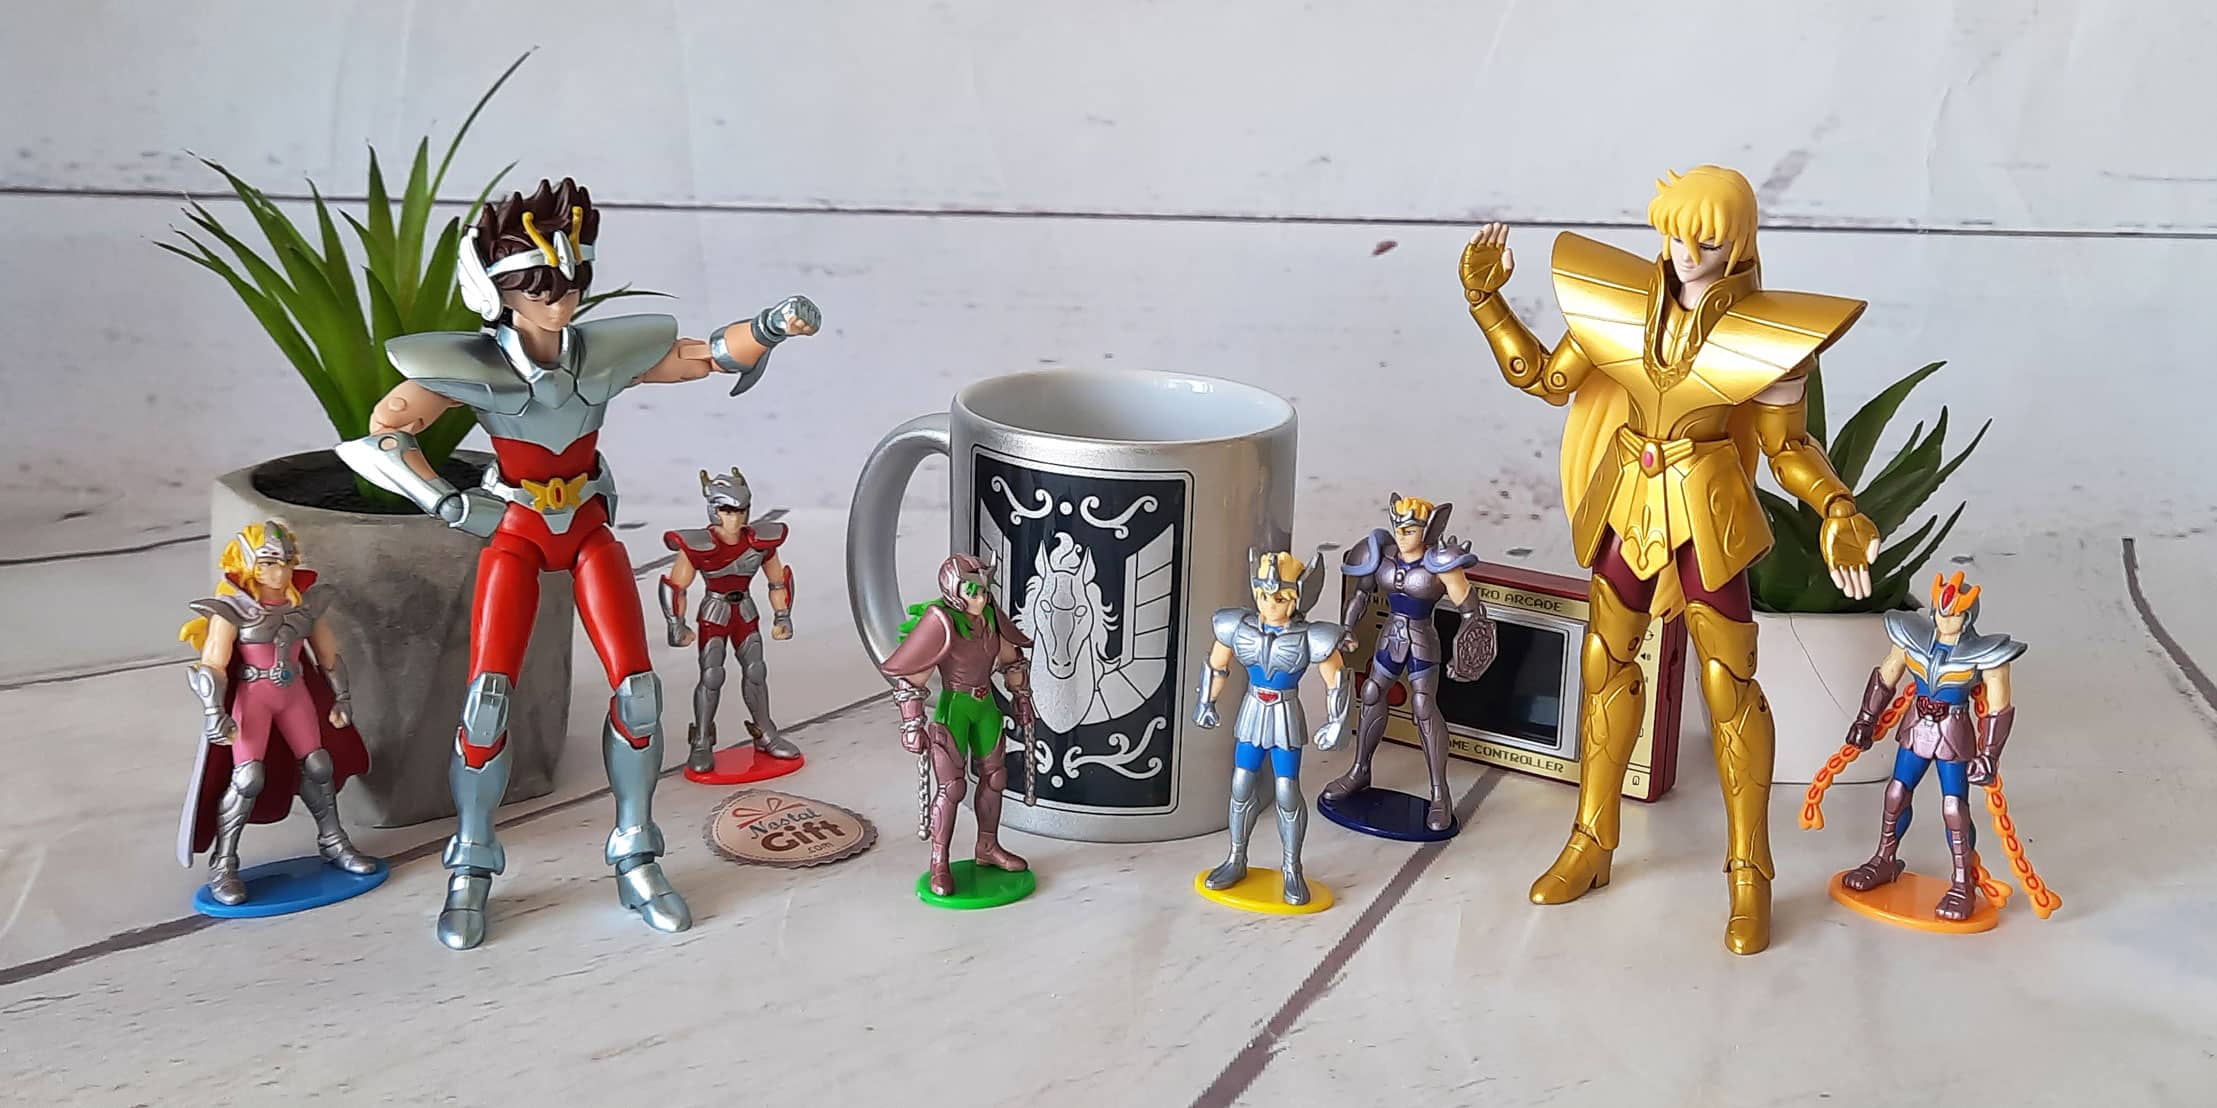 Retrouvez les figurines pour créer l’ambiance des aventures des Chevaliers du Zodiaque, dans les différents chapitres du manga. Ainsi que des mugs et autres goodies, les cadeaux idéaux pour les fans de Saint Seiya.